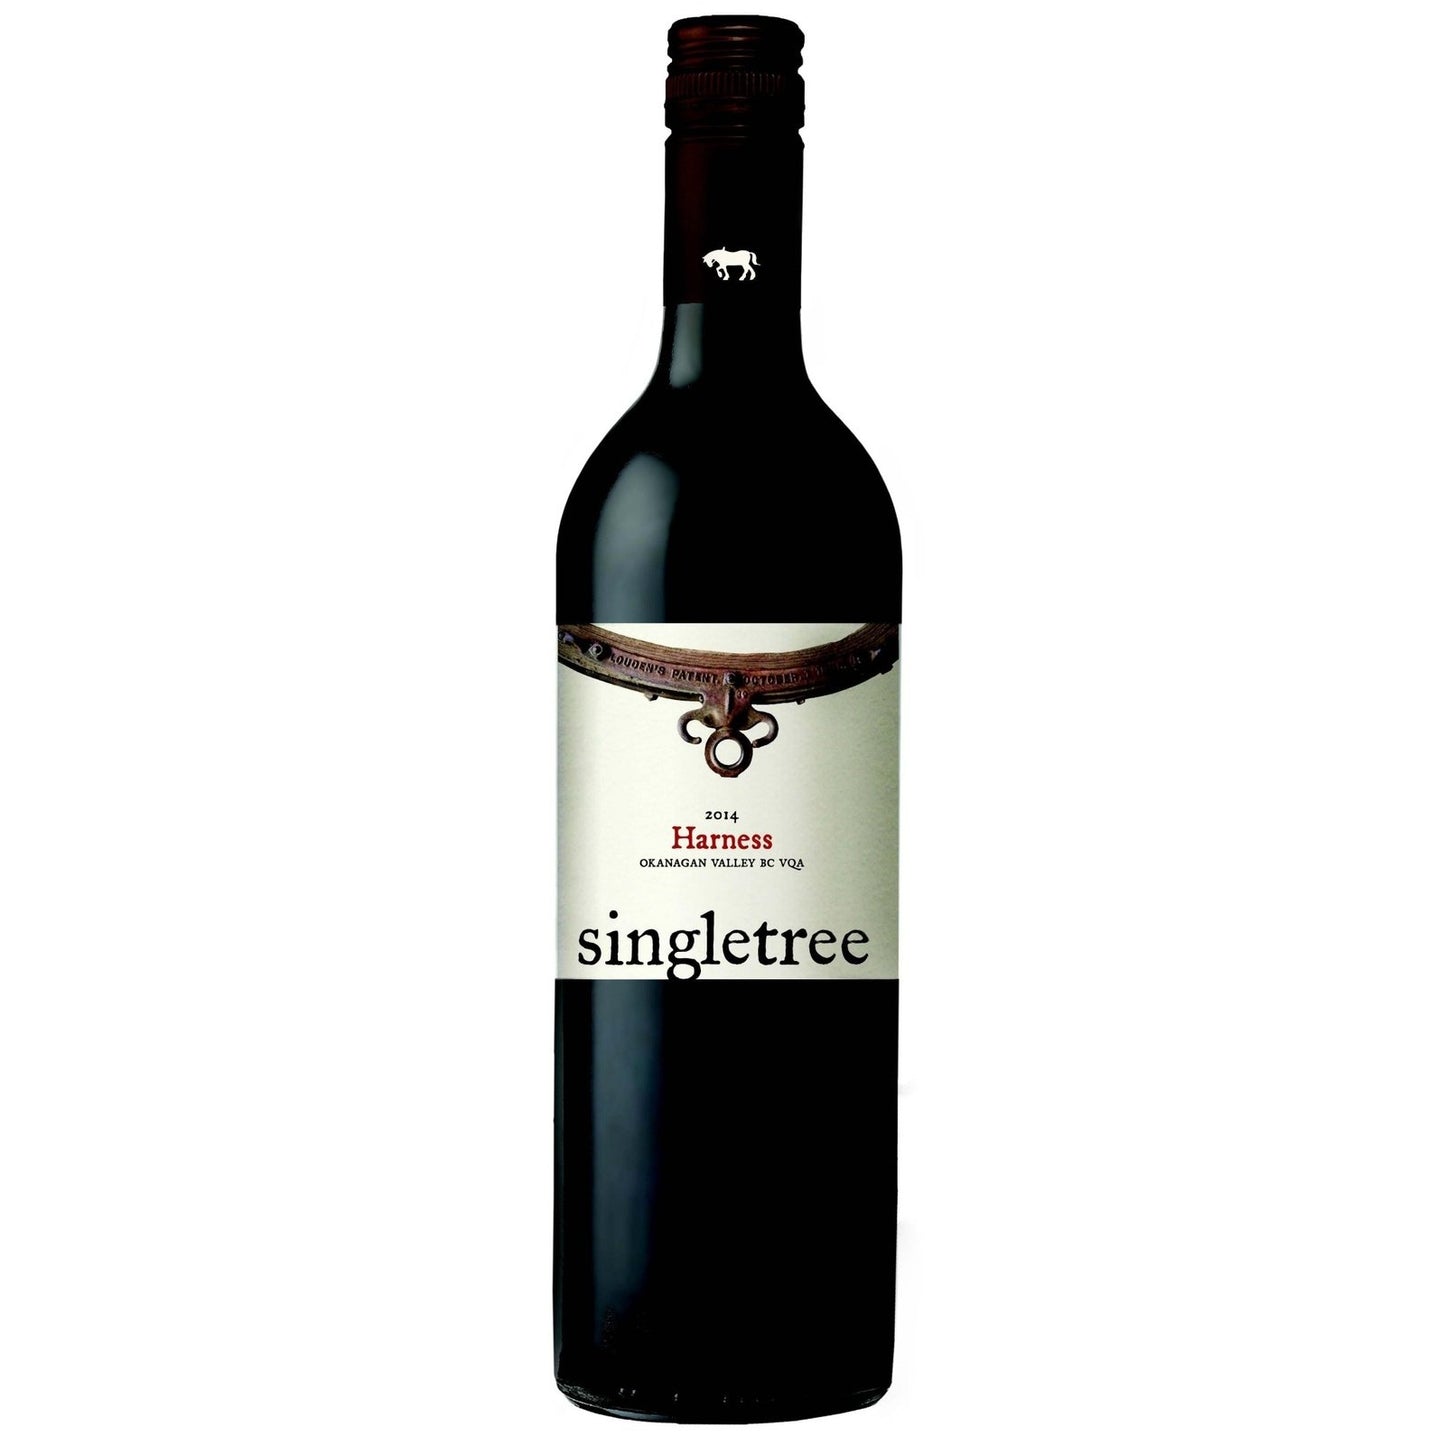 2014 Singletree “Harness” - Carl's Wine Club